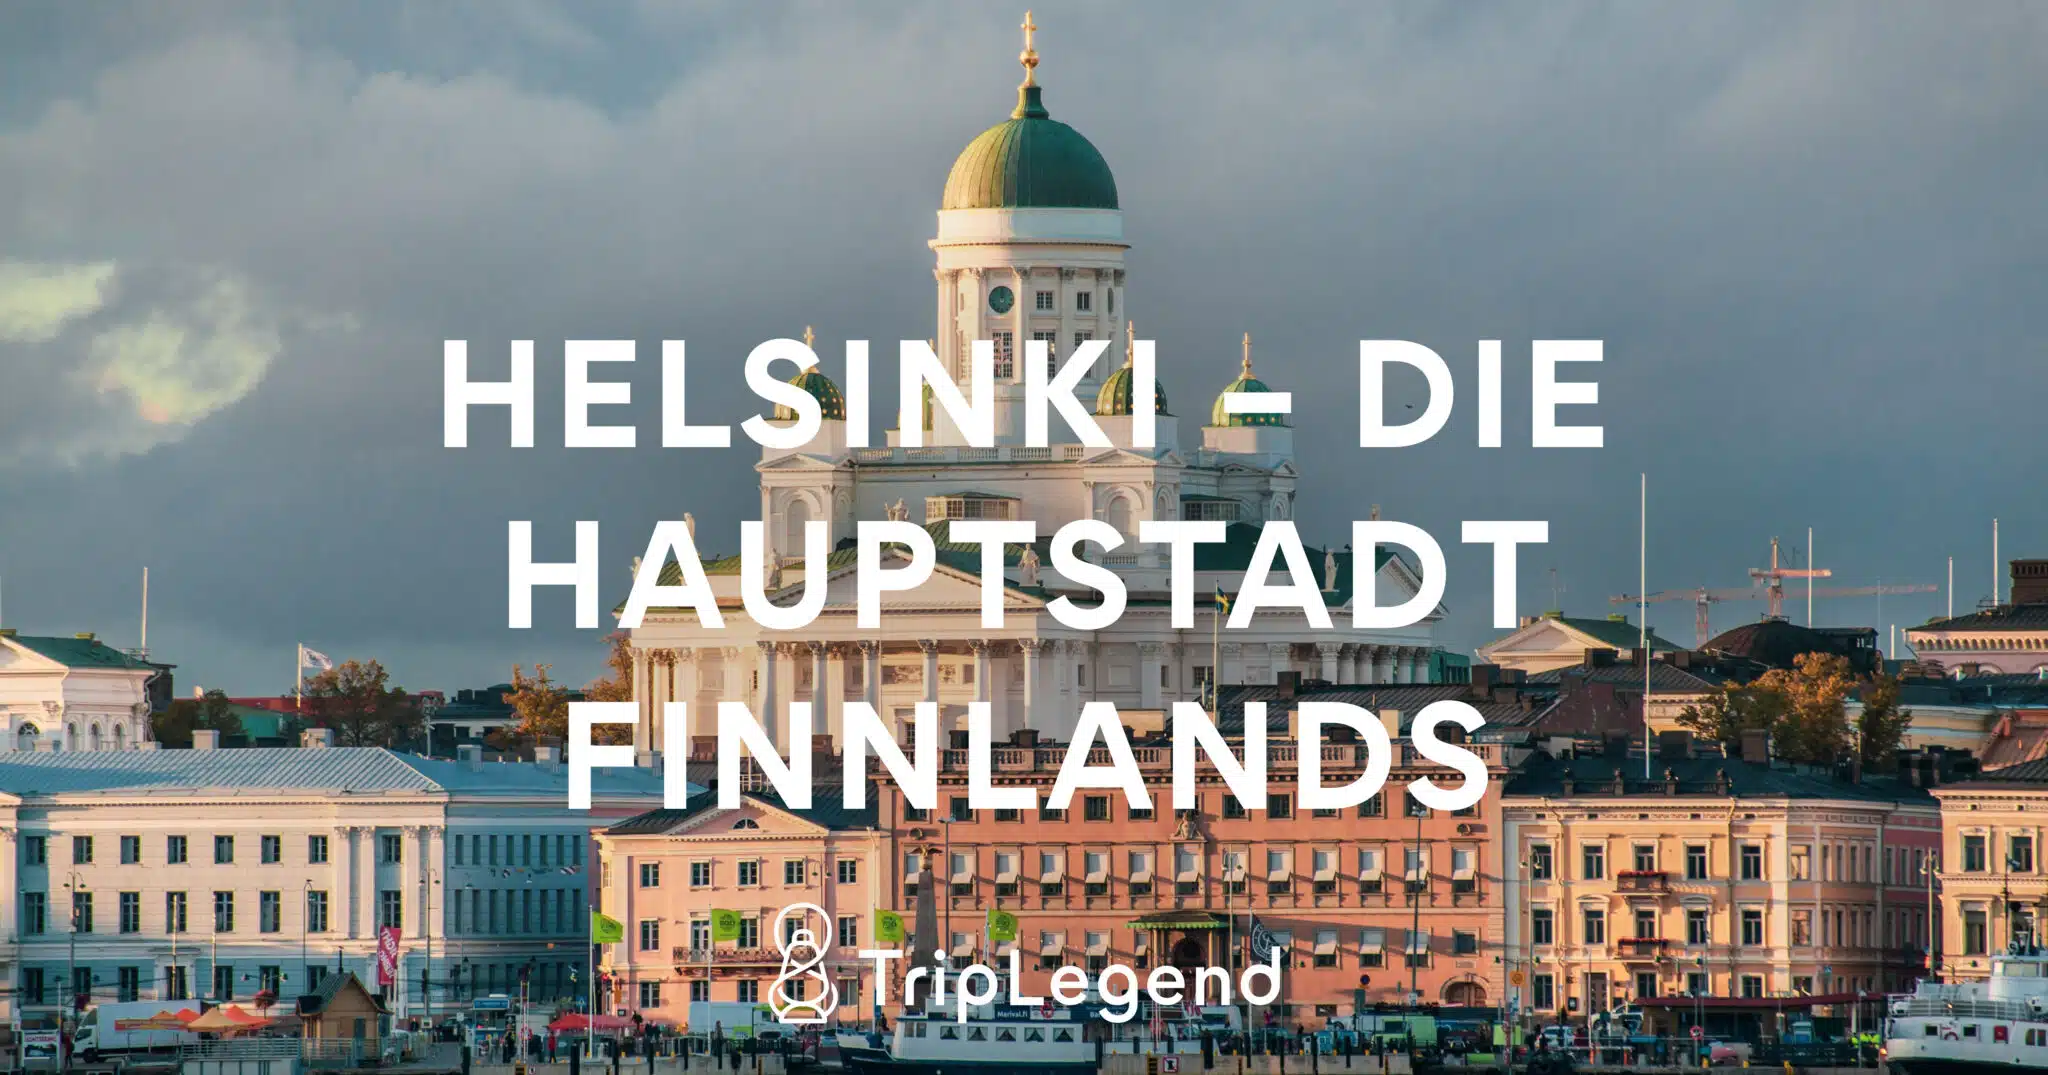 Helsinki - La capitale de la Finlande1 Scaled.jpg